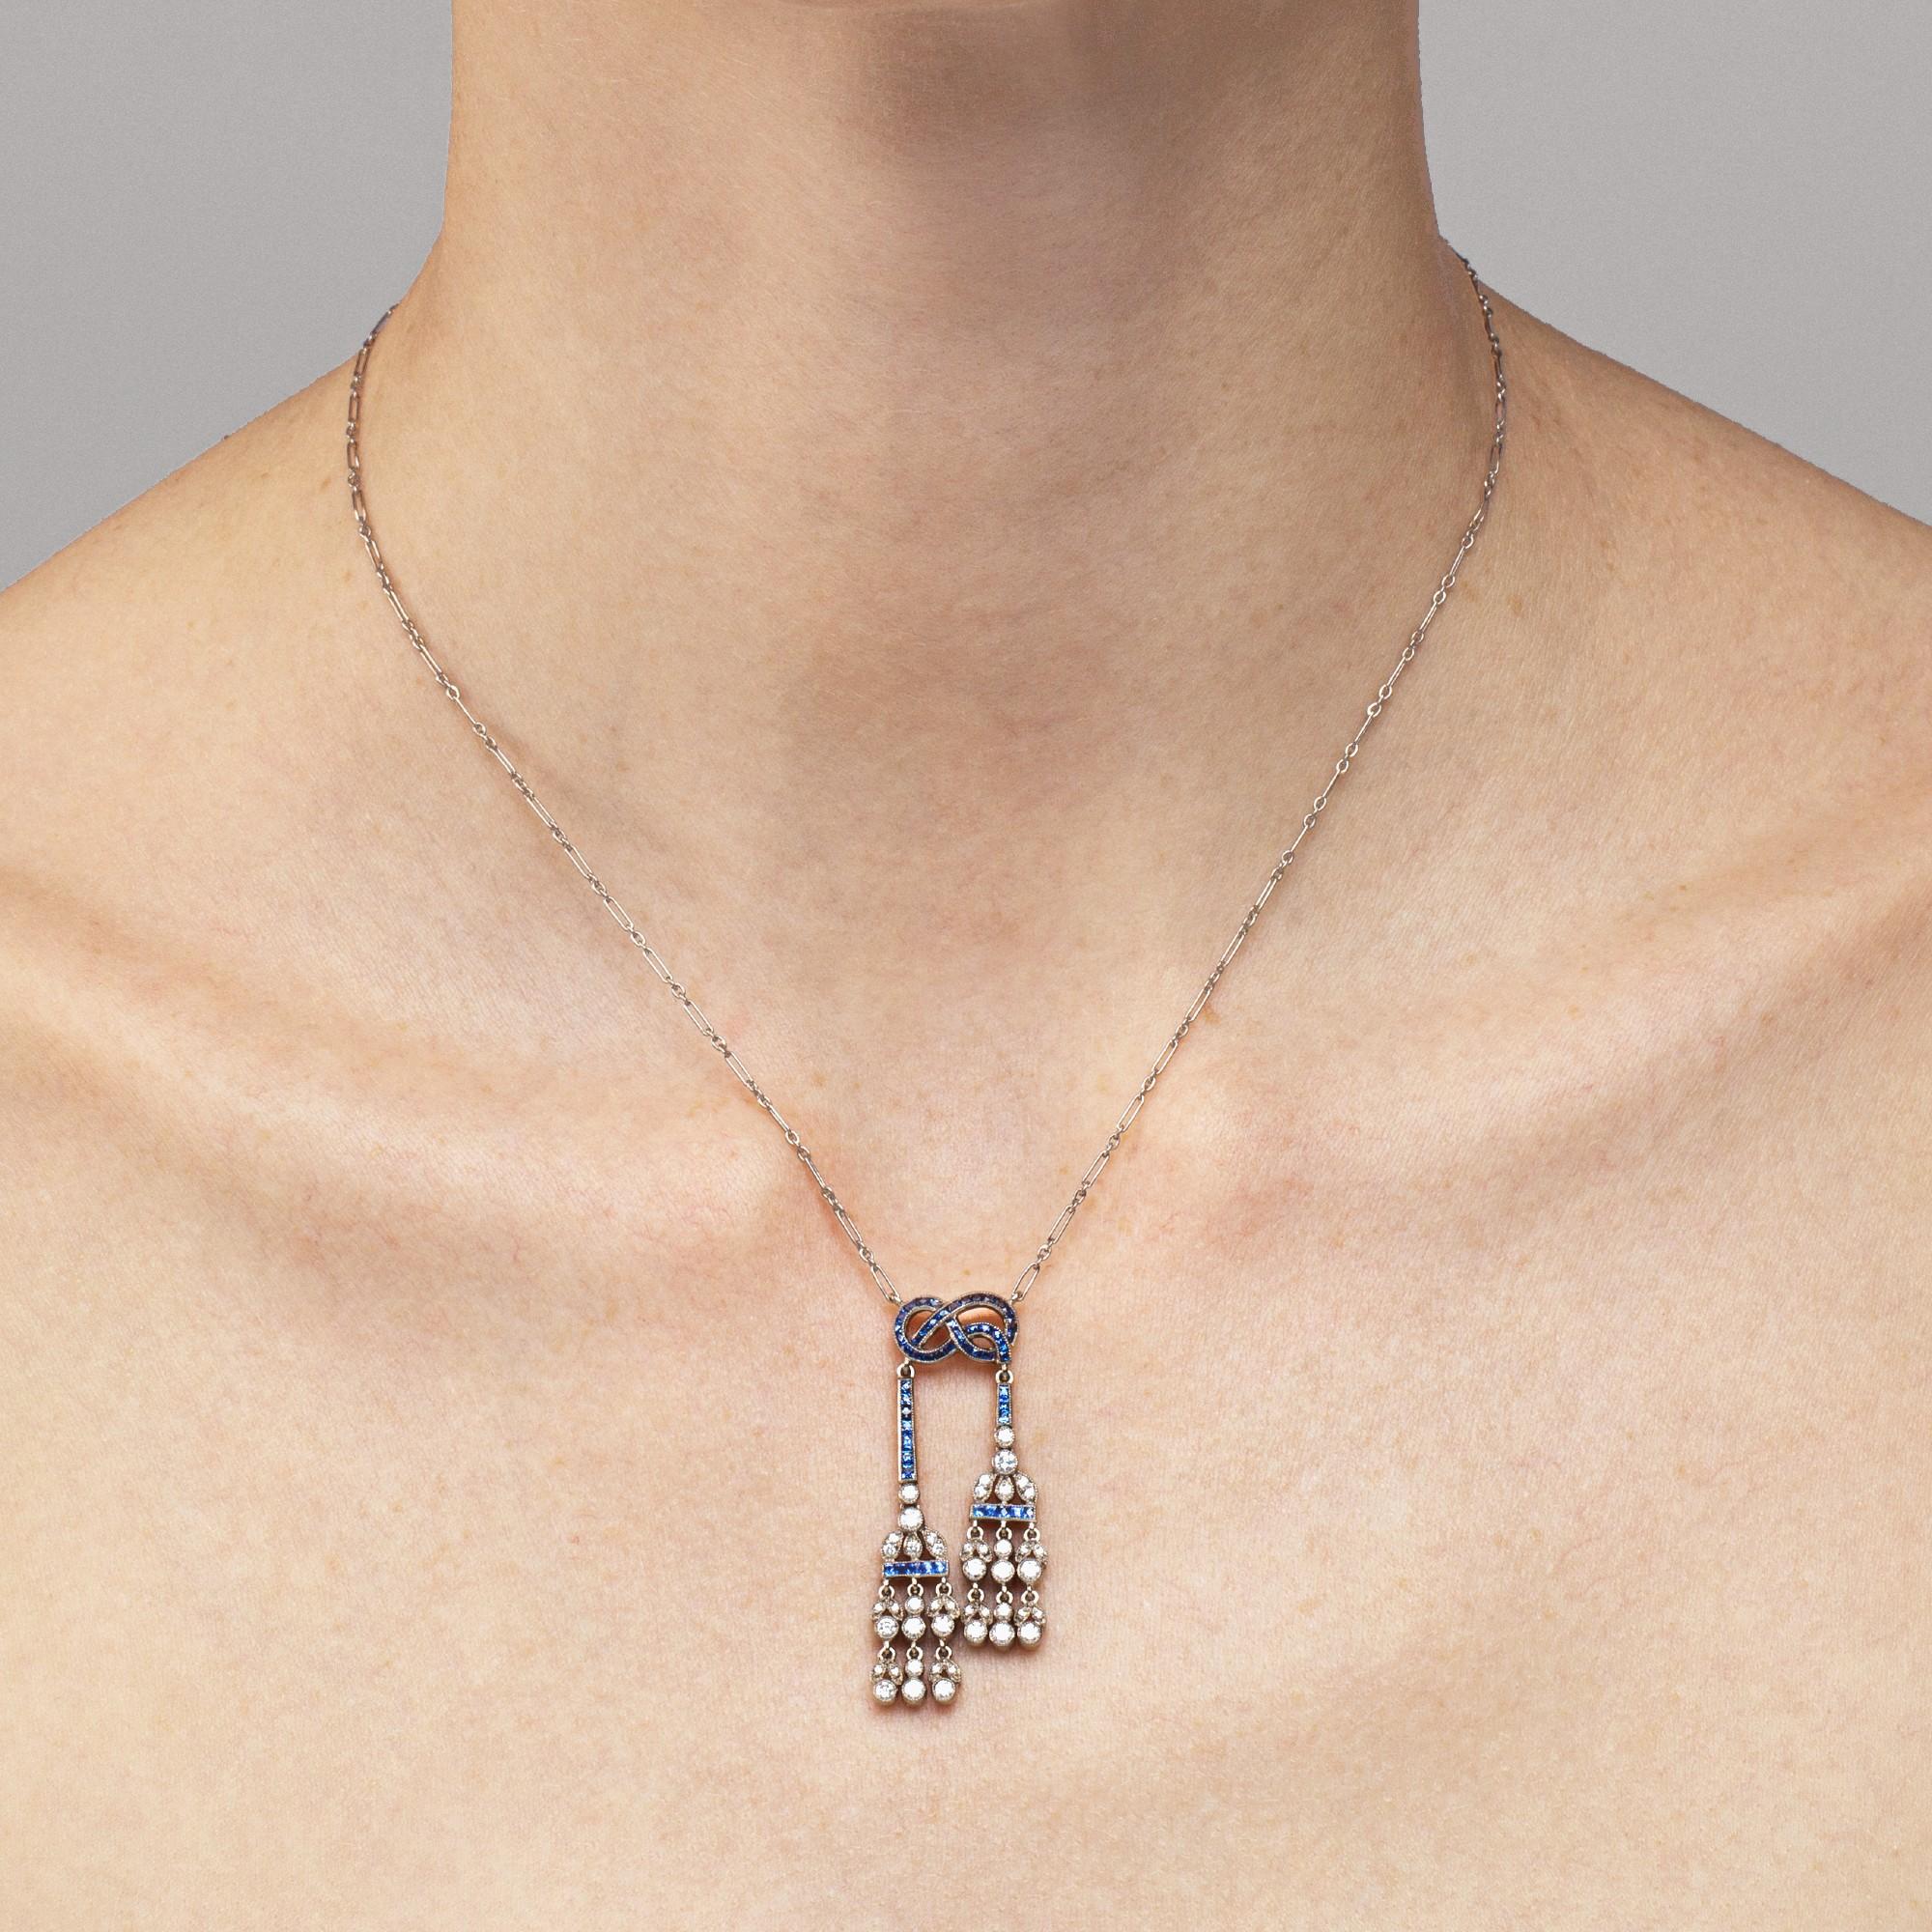 Alex Jona Design-Kollektion, handgefertigt in Italien, Anhänger-Halskette mit 53 blauen Saphiren mit einem Gewicht von 1,97 ct. und 46 weißen Diamanten mit einem Gesamtgewicht von 0,82 ct.

Die Juwelen von Alex Jona zeichnen sich nicht nur durch ihr